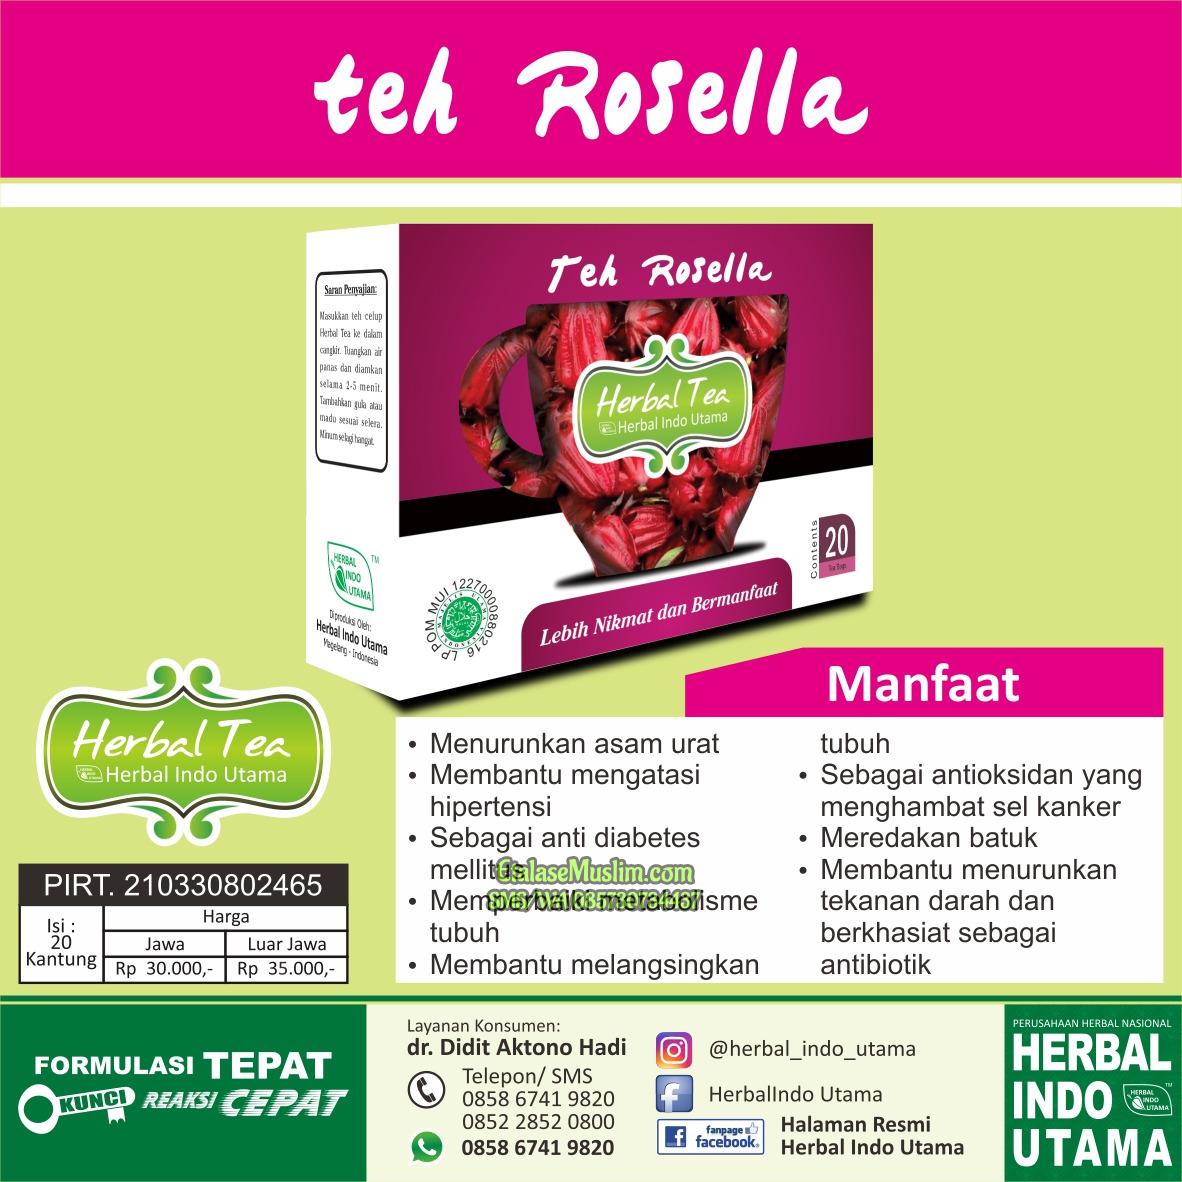 Teh Celup Rosella HIU Herbal Indo Utama Rosella Herbal Tea